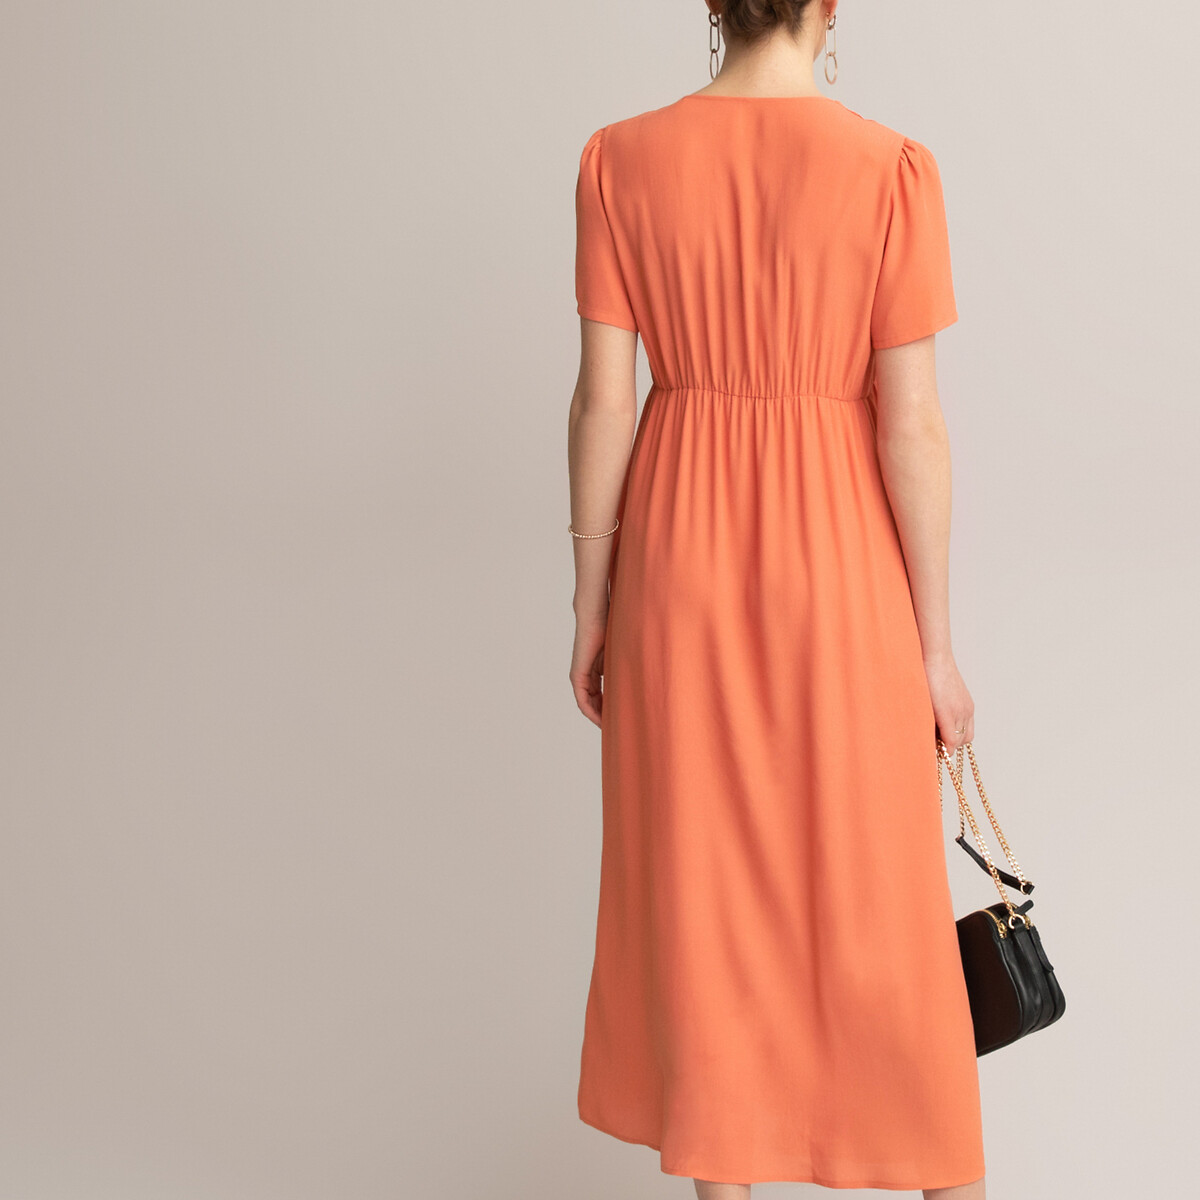 Платье LaRedoute Для периода беременности длинное вырез с короткими рукавами 36 (FR) - 42 (RUS) оранжевый, размер 36 (FR) - 42 (RUS) Для периода беременности длинное вырез с короткими рукавами 36 (FR) - 42 (RUS) оранжевый - фото 4